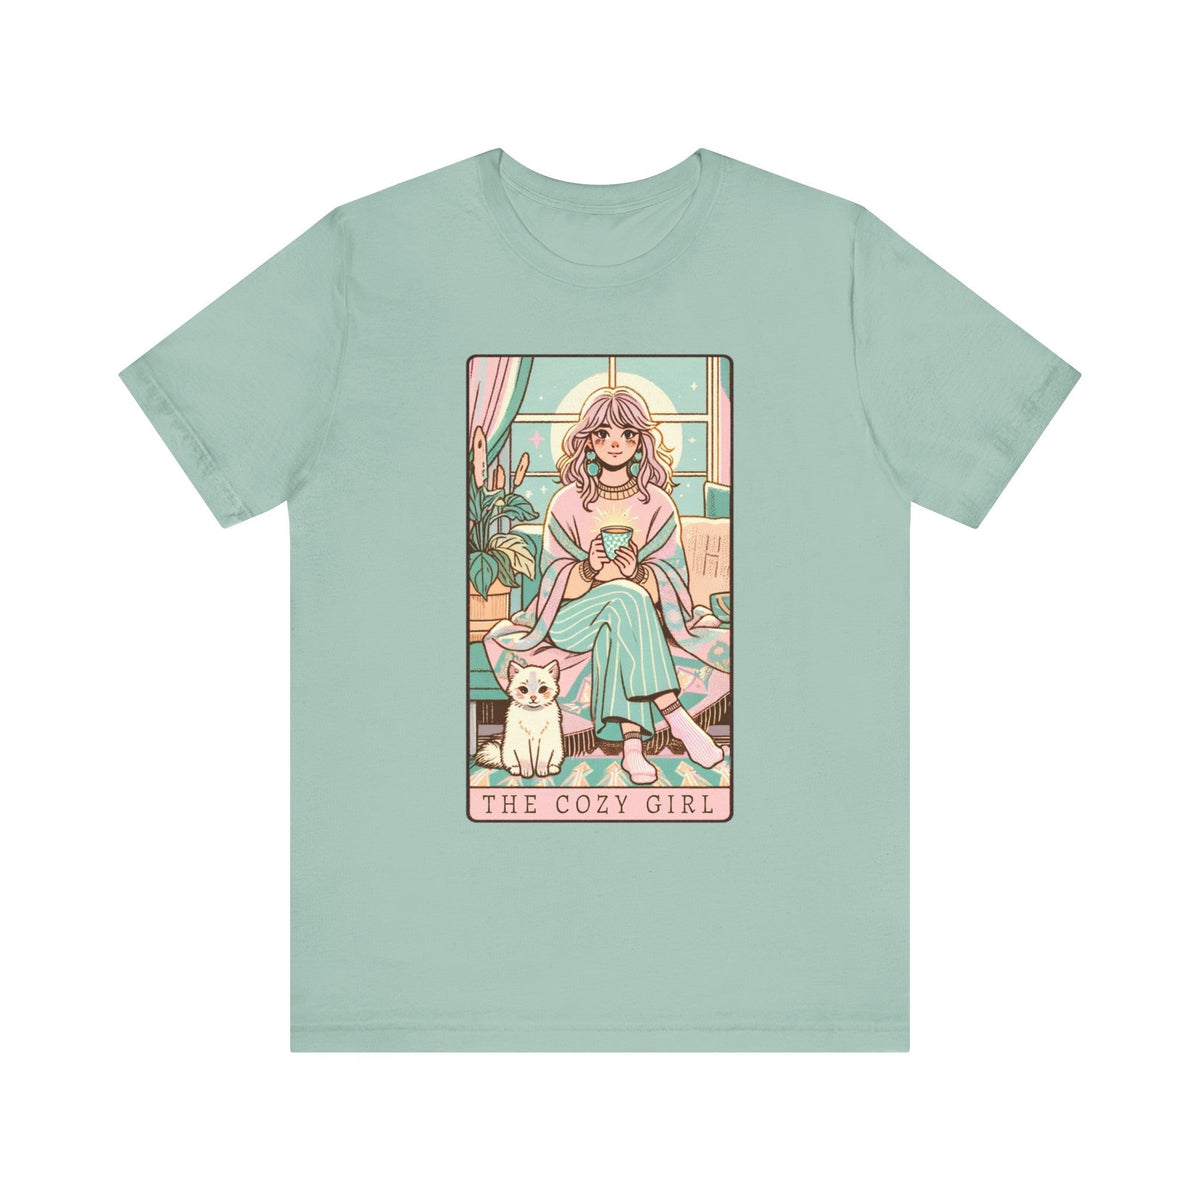 The Cozy Girl Day Tarot Card Short Sleeve Tee - Goth Cloth Co.T - Shirt77977445121355886006